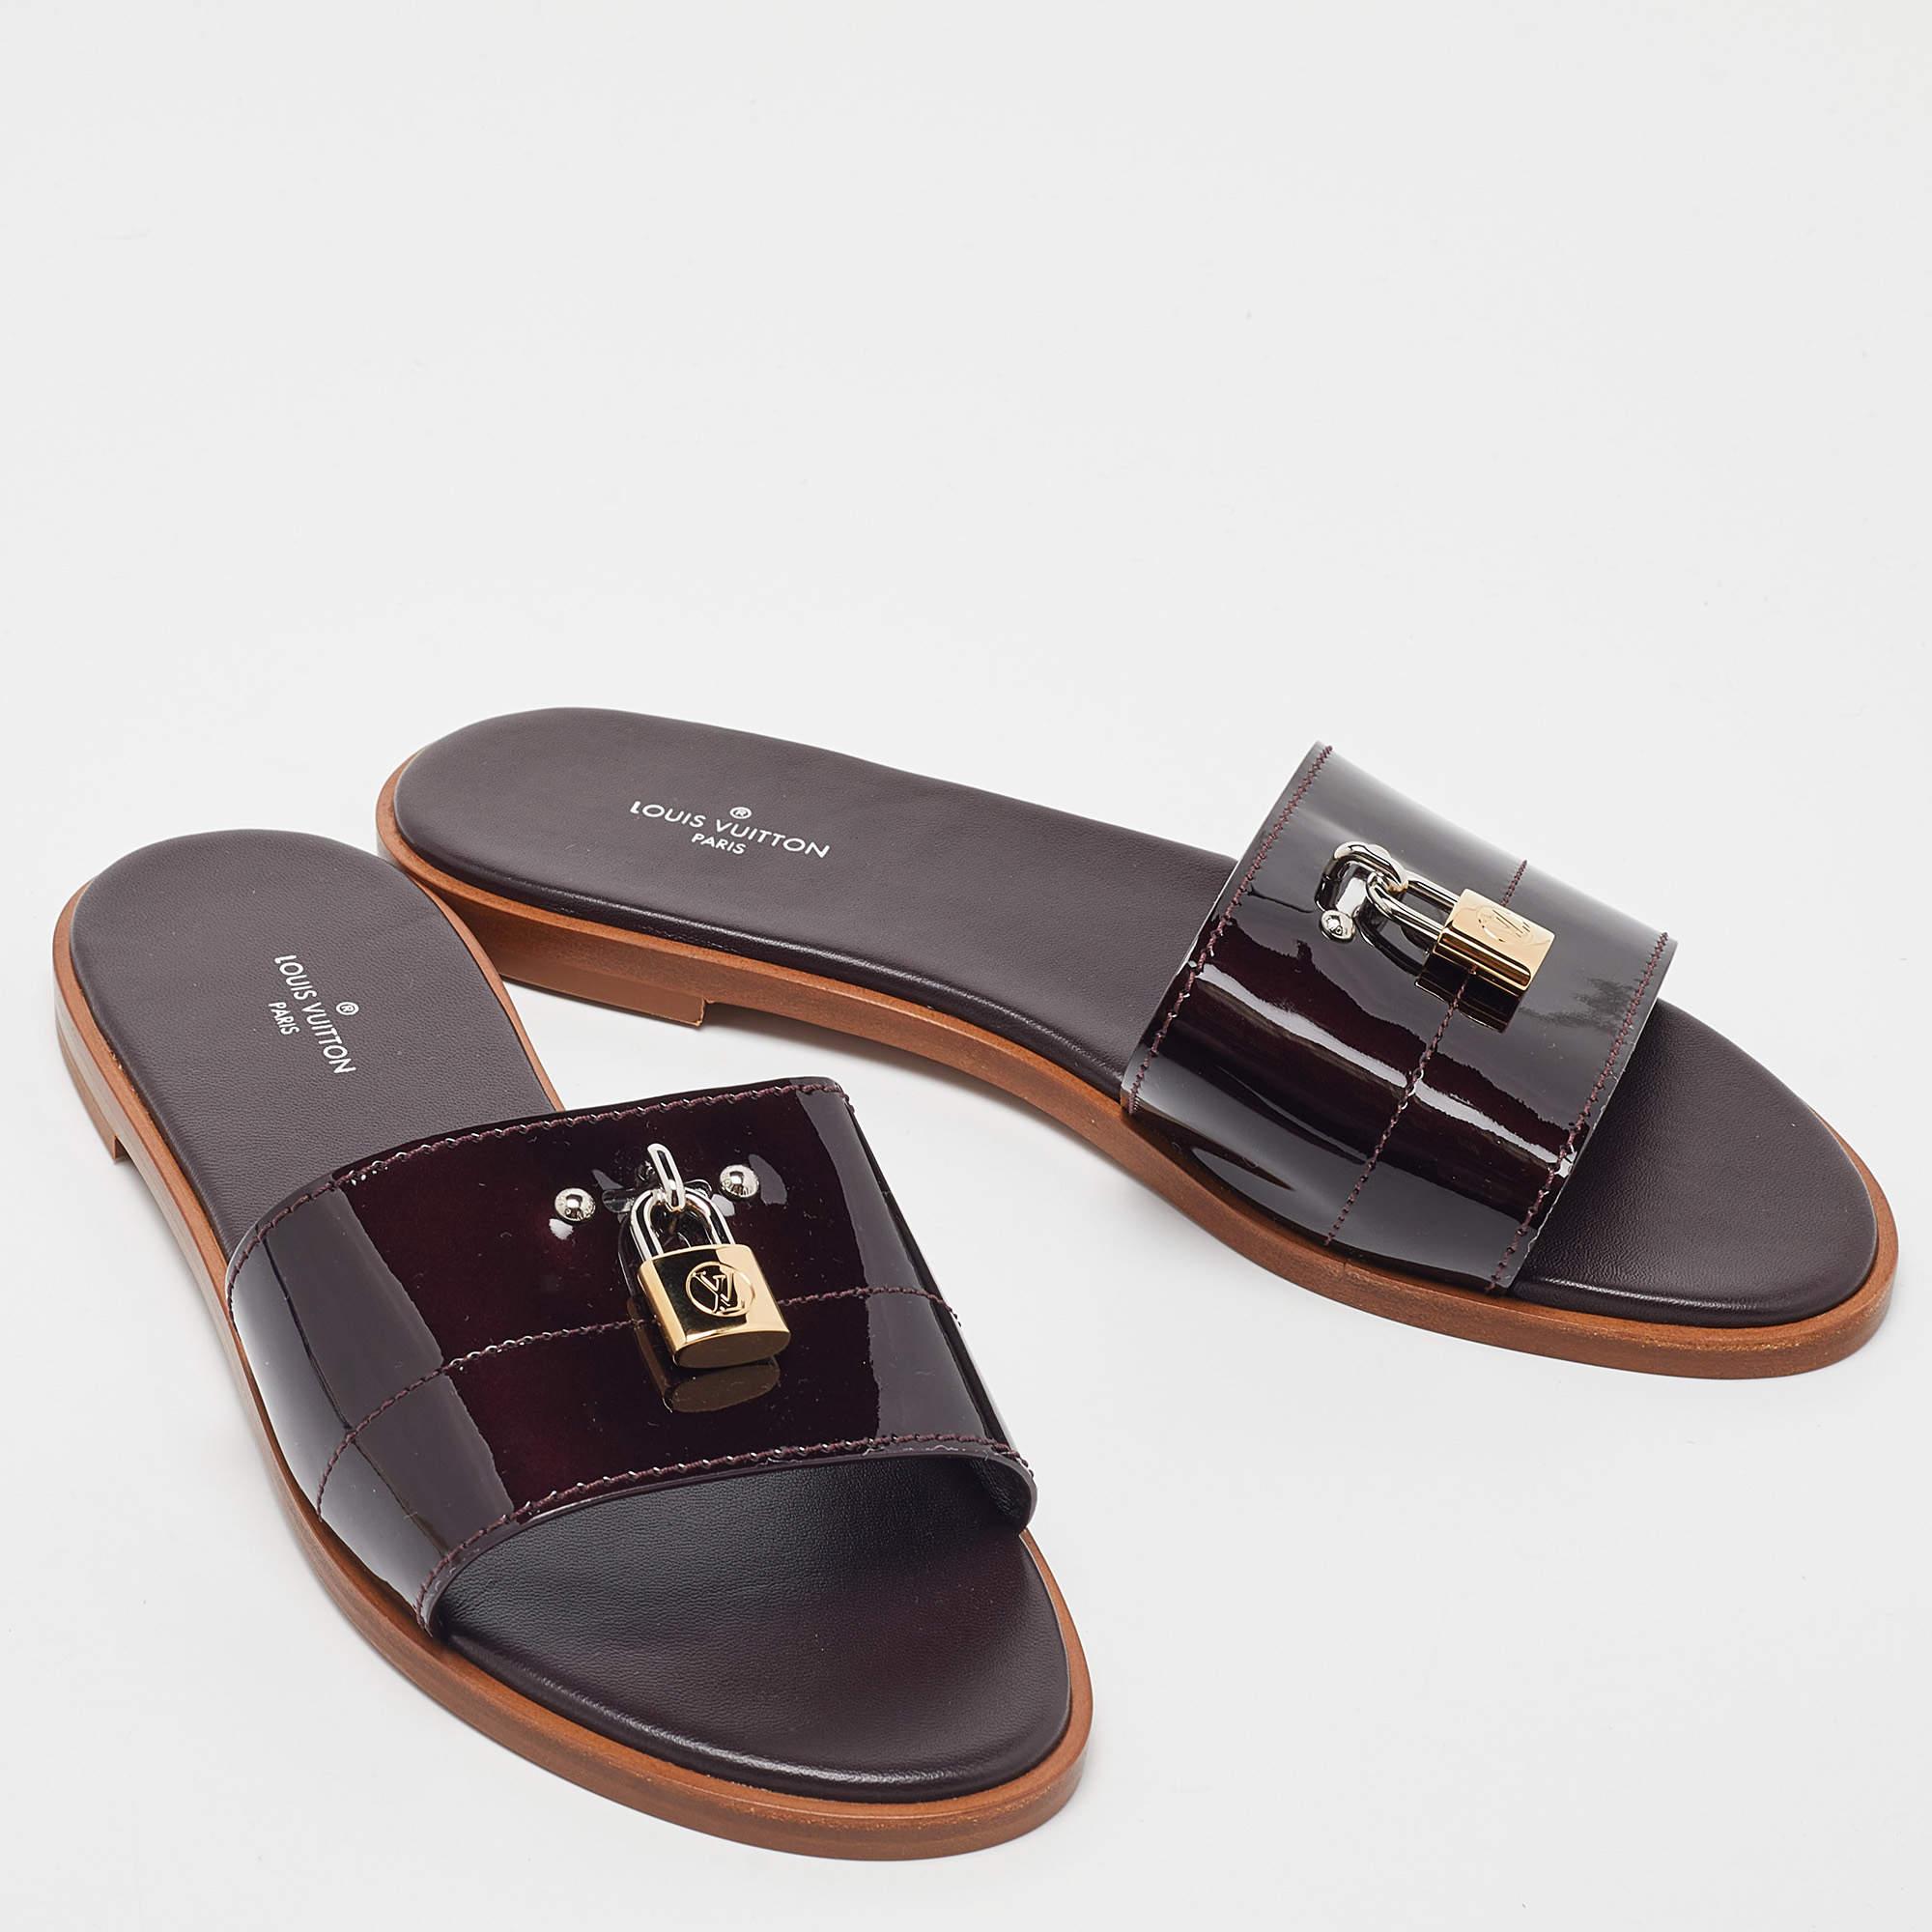 Louis Vuitton Amarante Patent Leather Lock It Flat Sandals Size 38 1